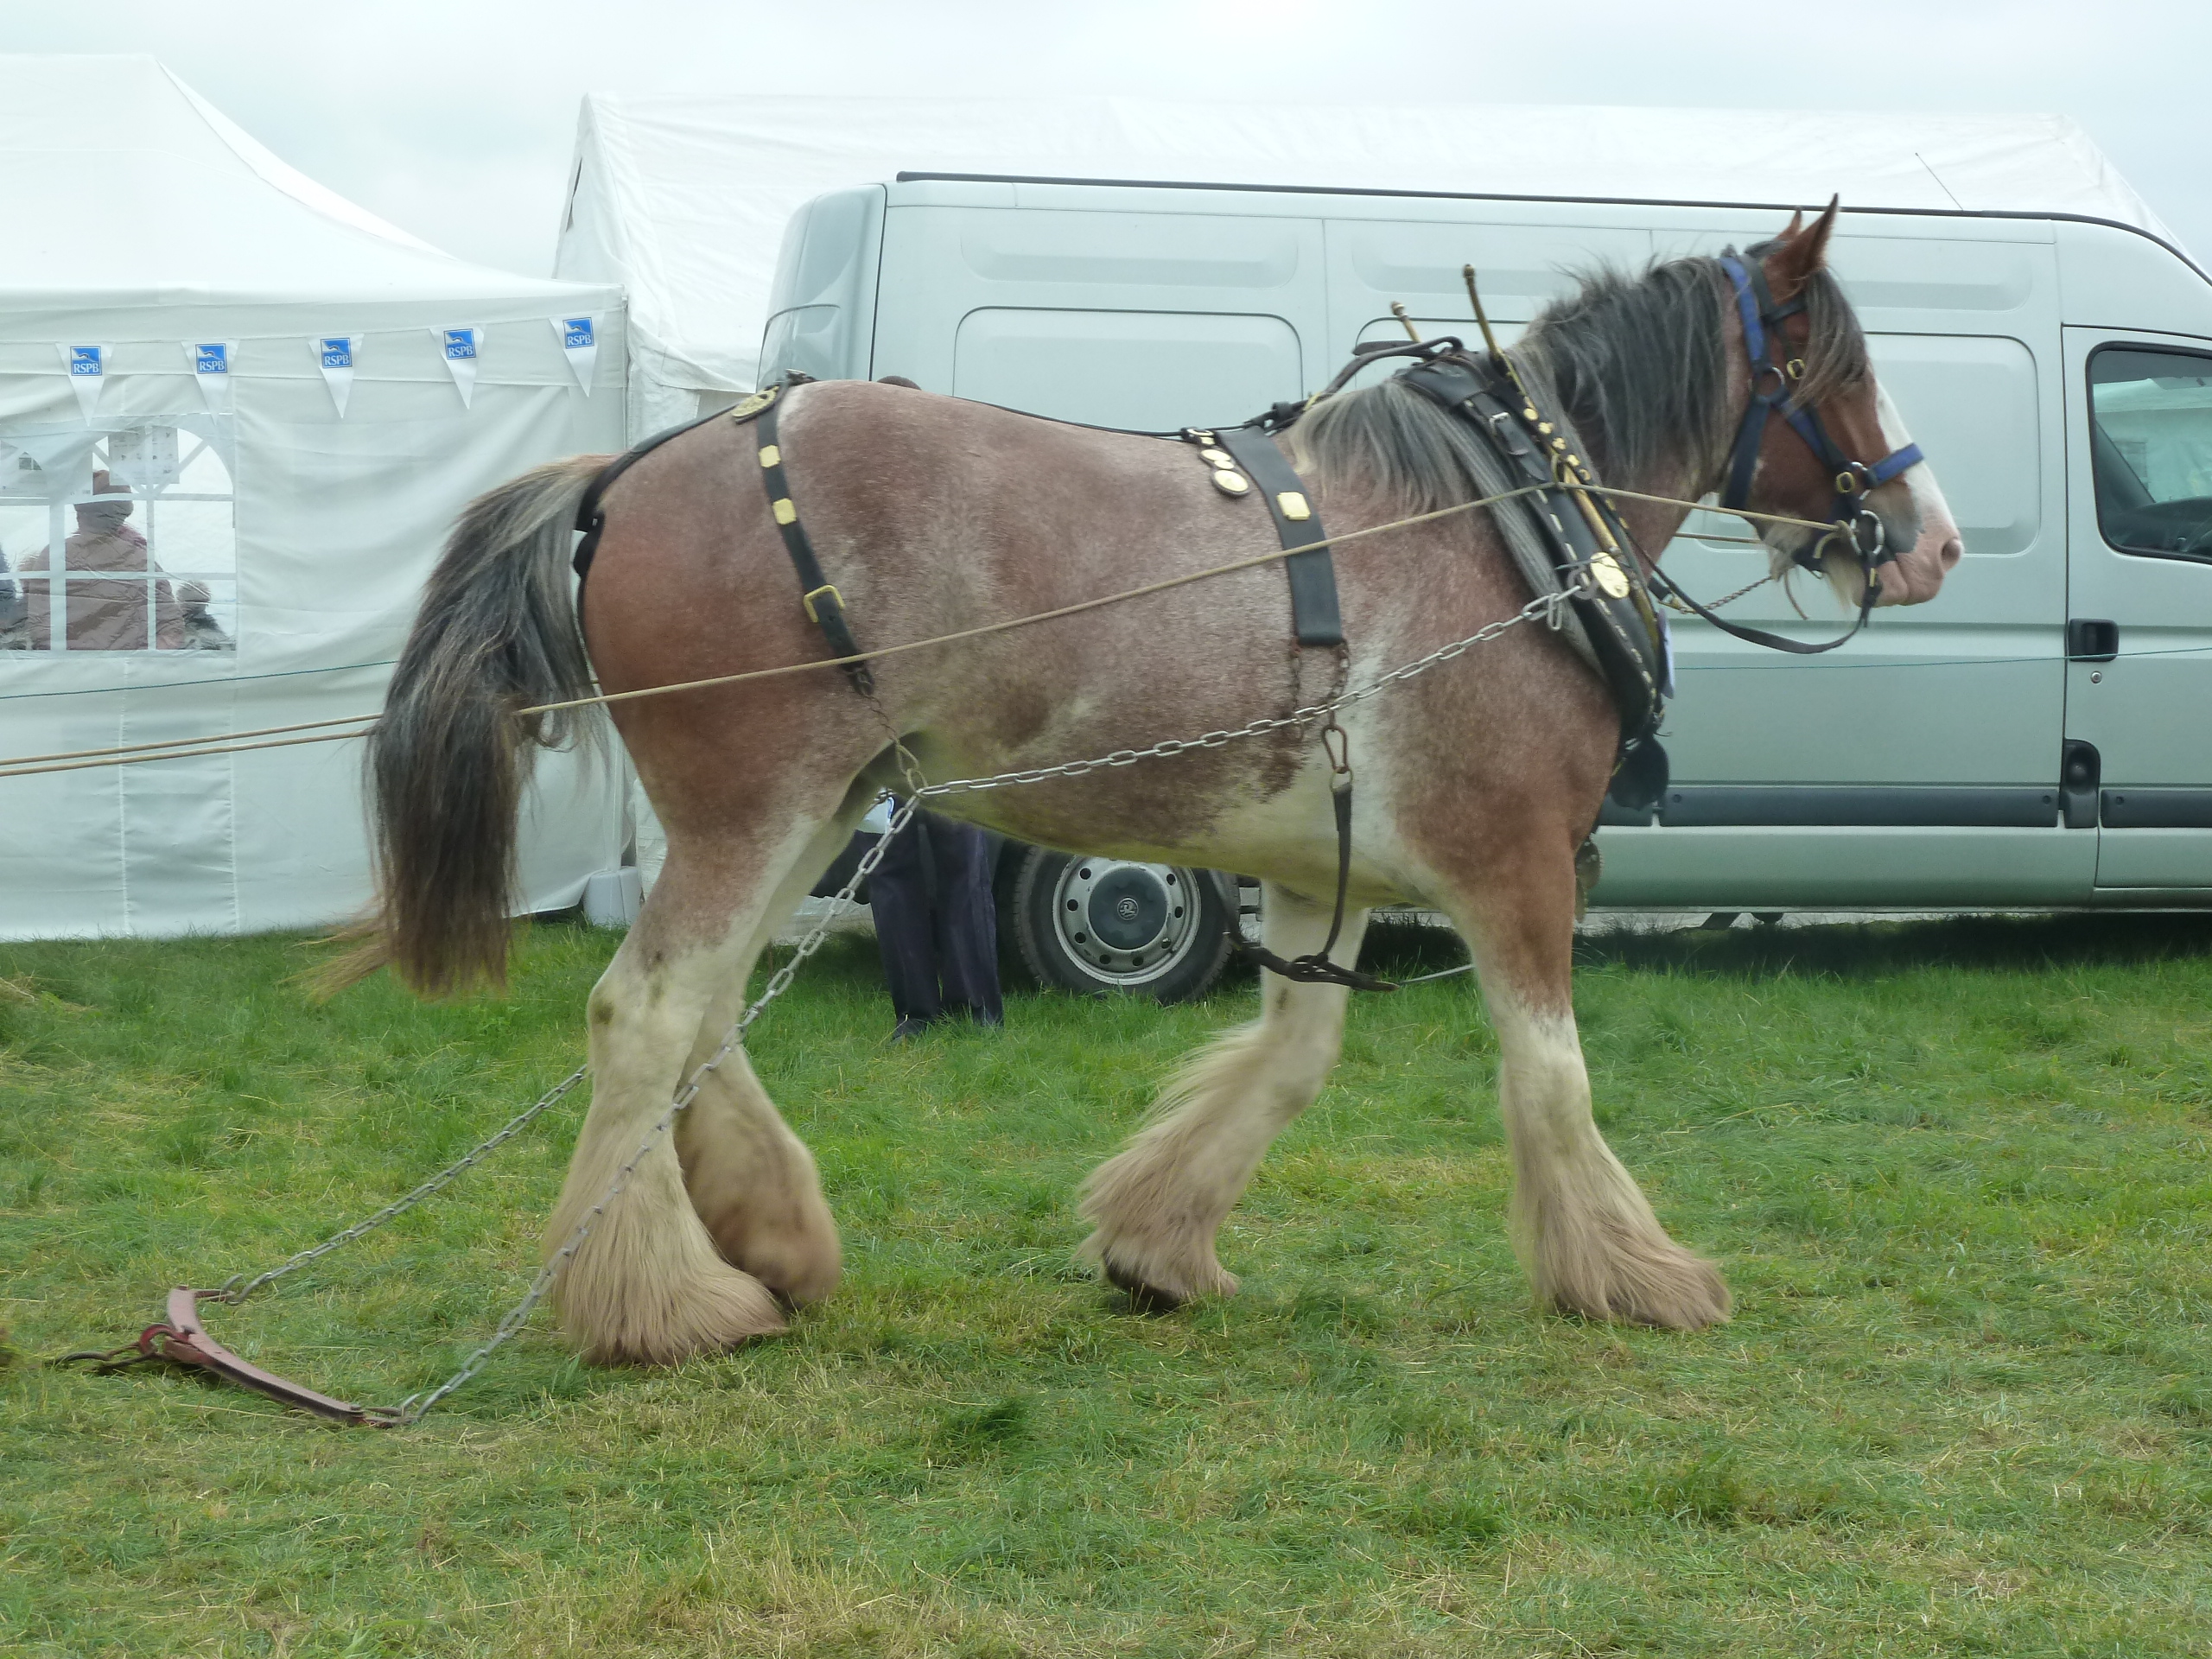 Hairy horses are beautiful (2) | lesleylodge